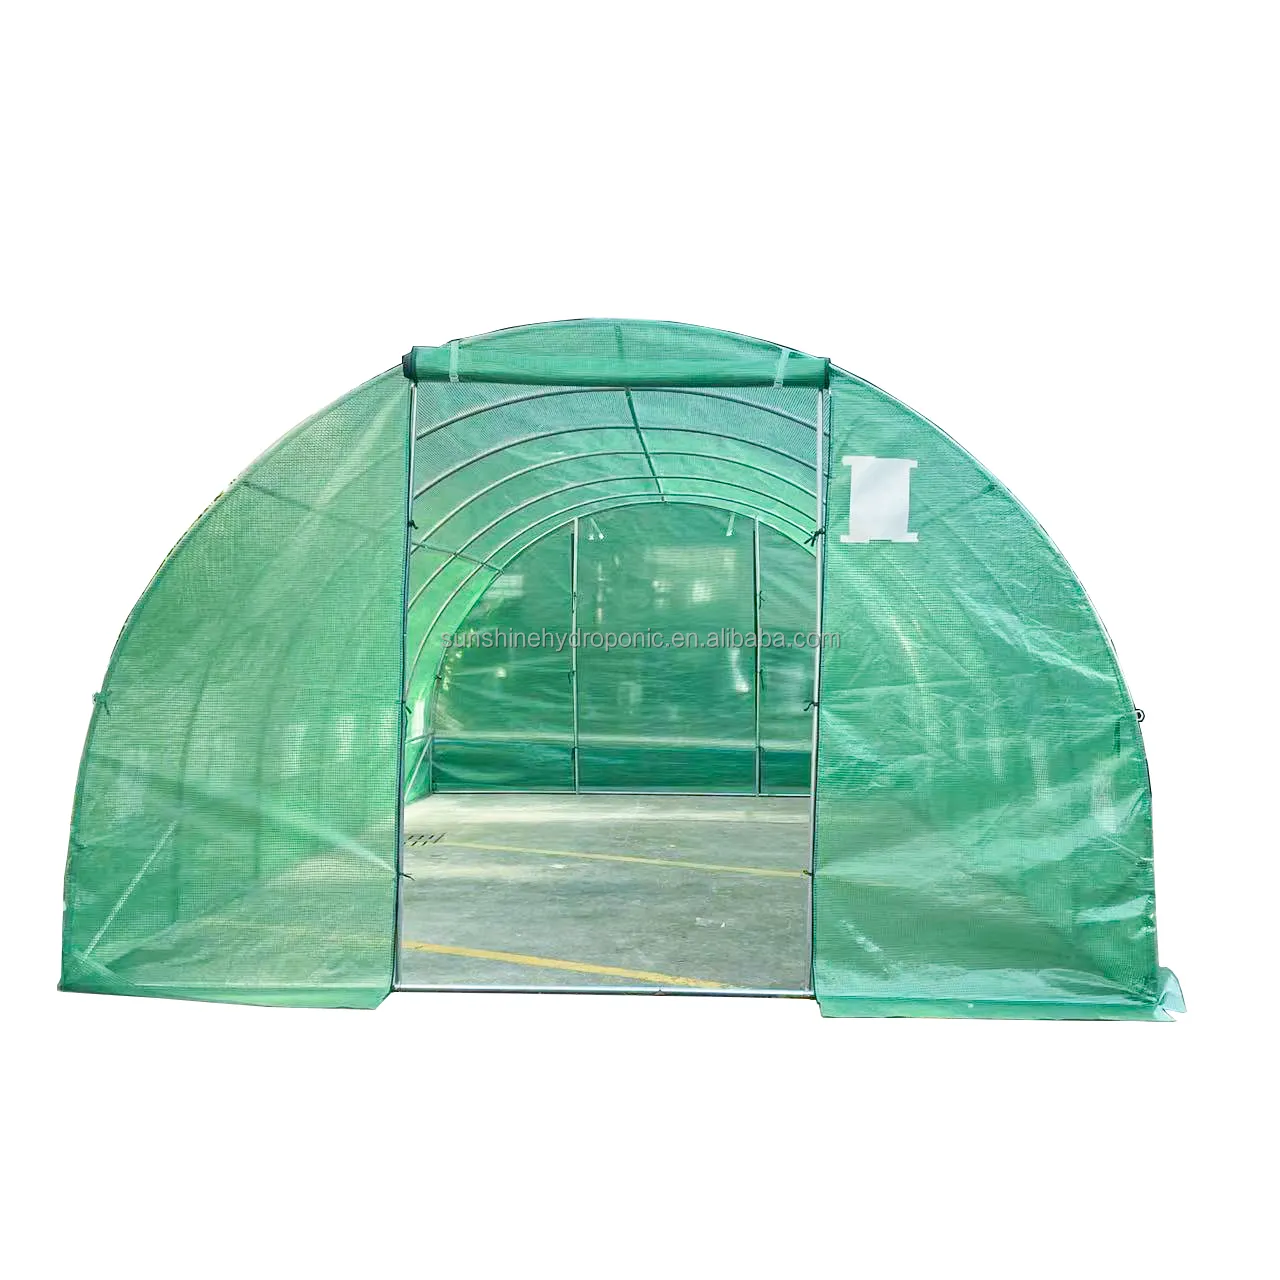 プラスチック製小屋イチゴ温室農業用トマト用プラスチックフィルムトンネル温室